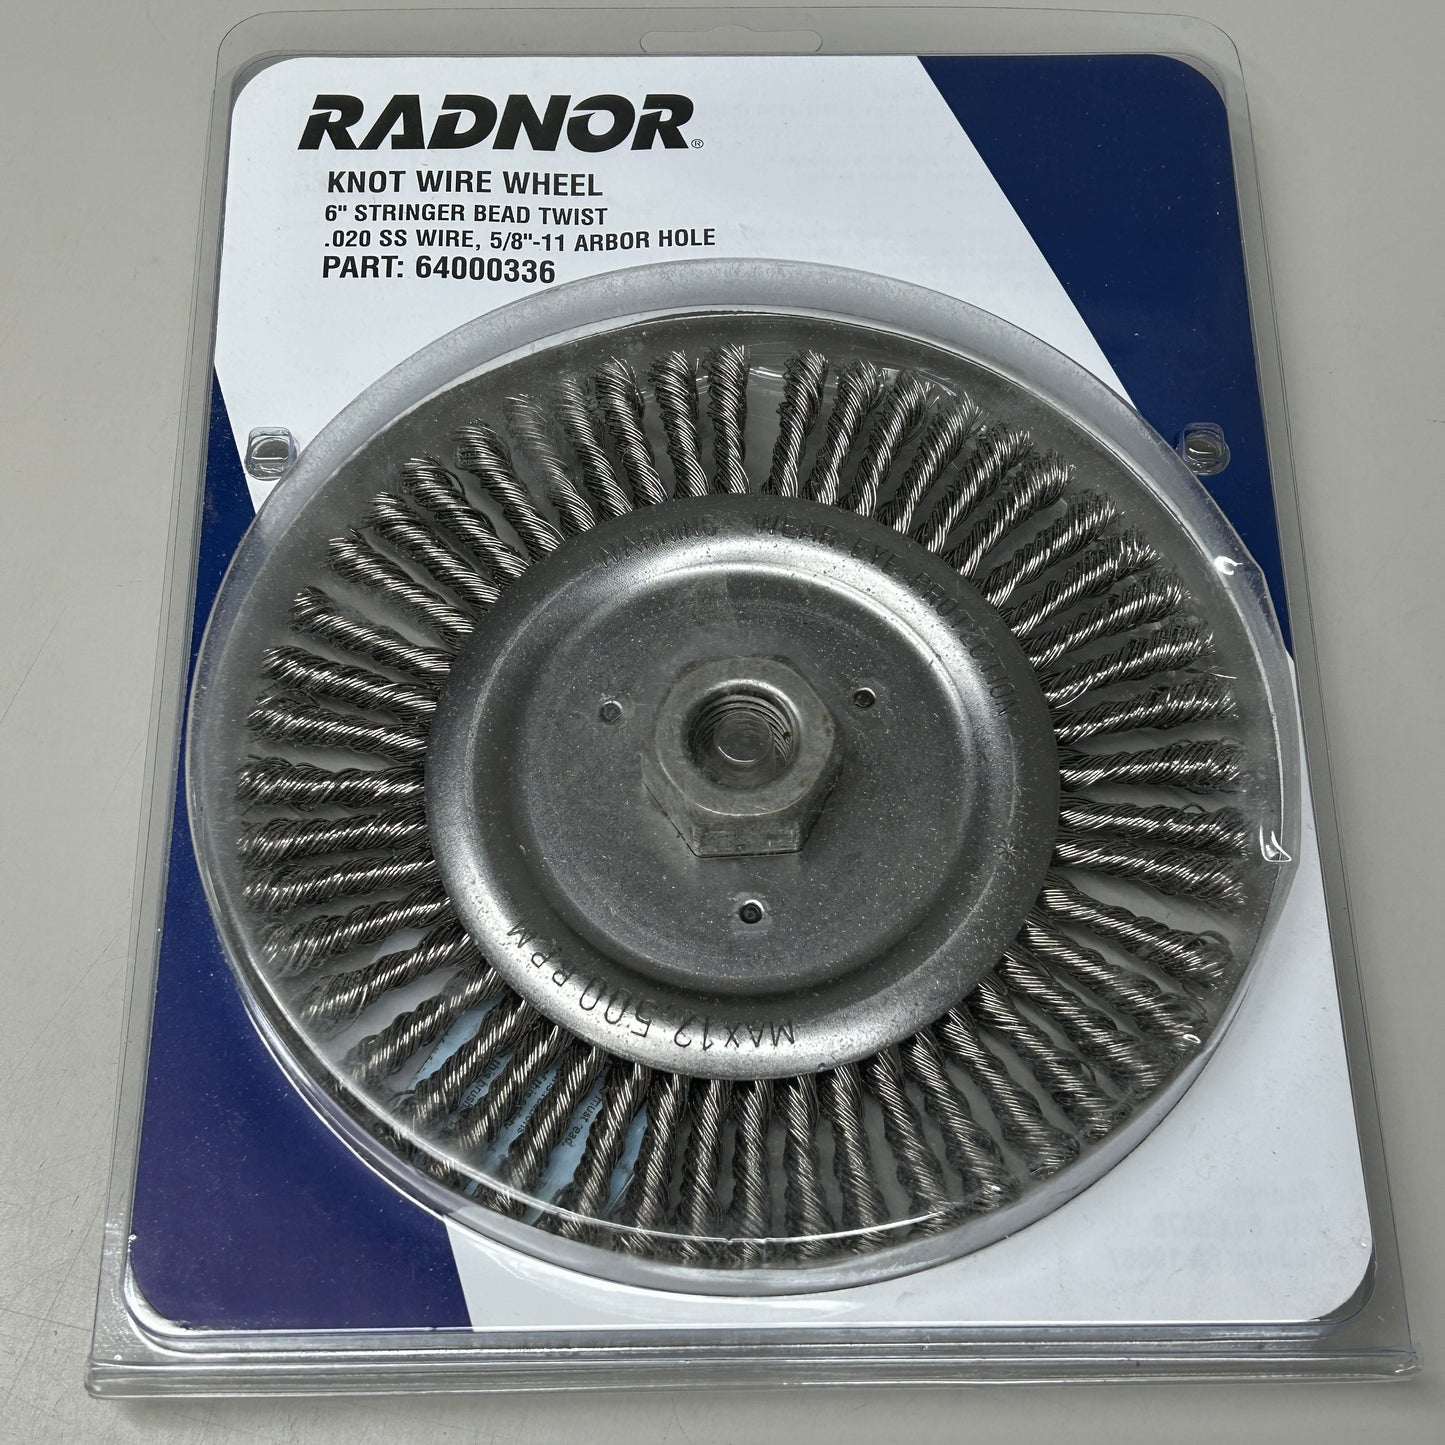 RADNOR Knot Wire Wheel 6" Stringer Bead Twist 64000336 (New)